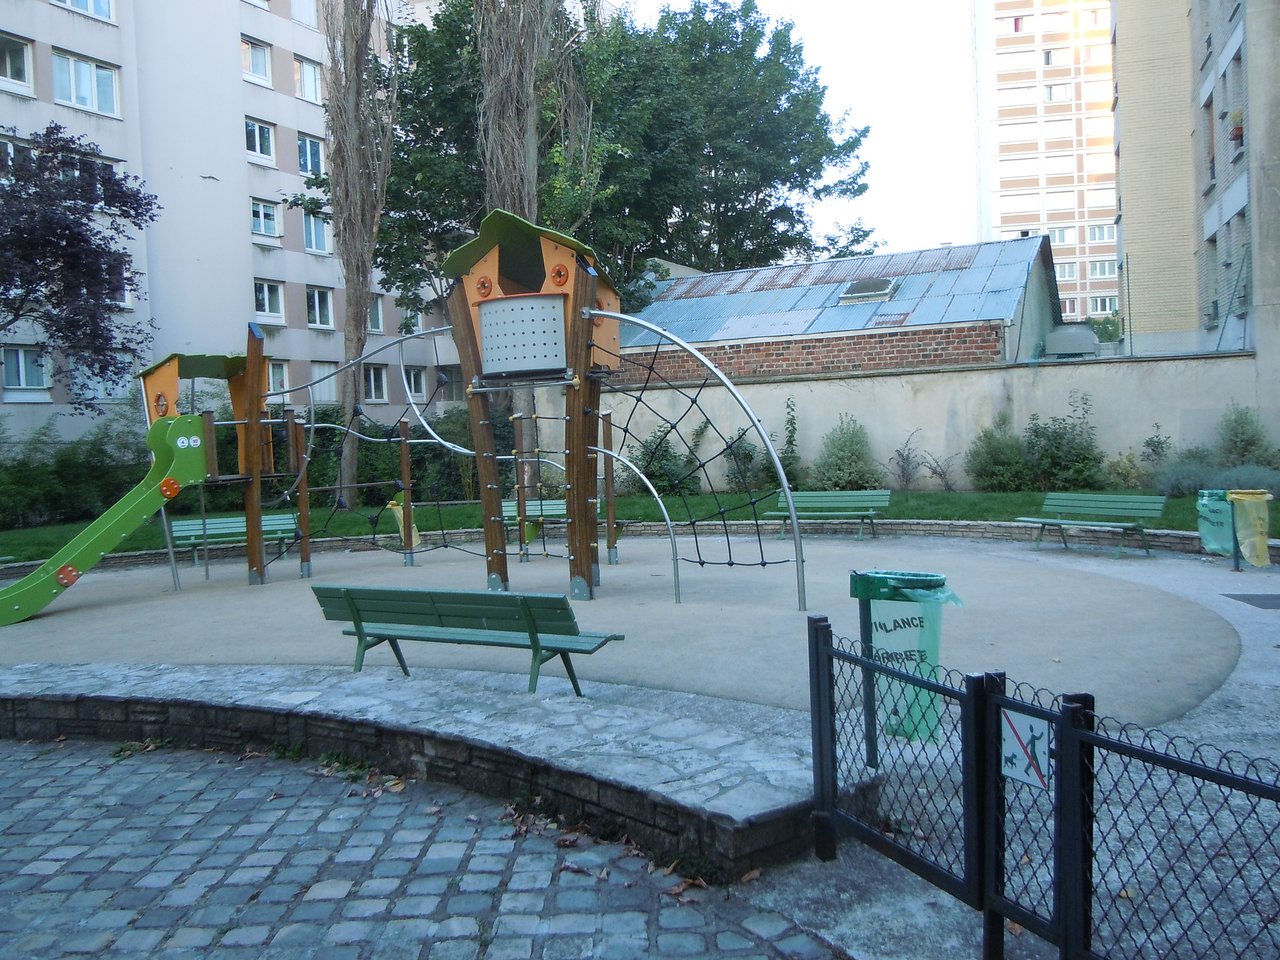 Architecte De Jardin Inspirant Jardin Du Regard De La Lanterne Paris 2020 All You Need